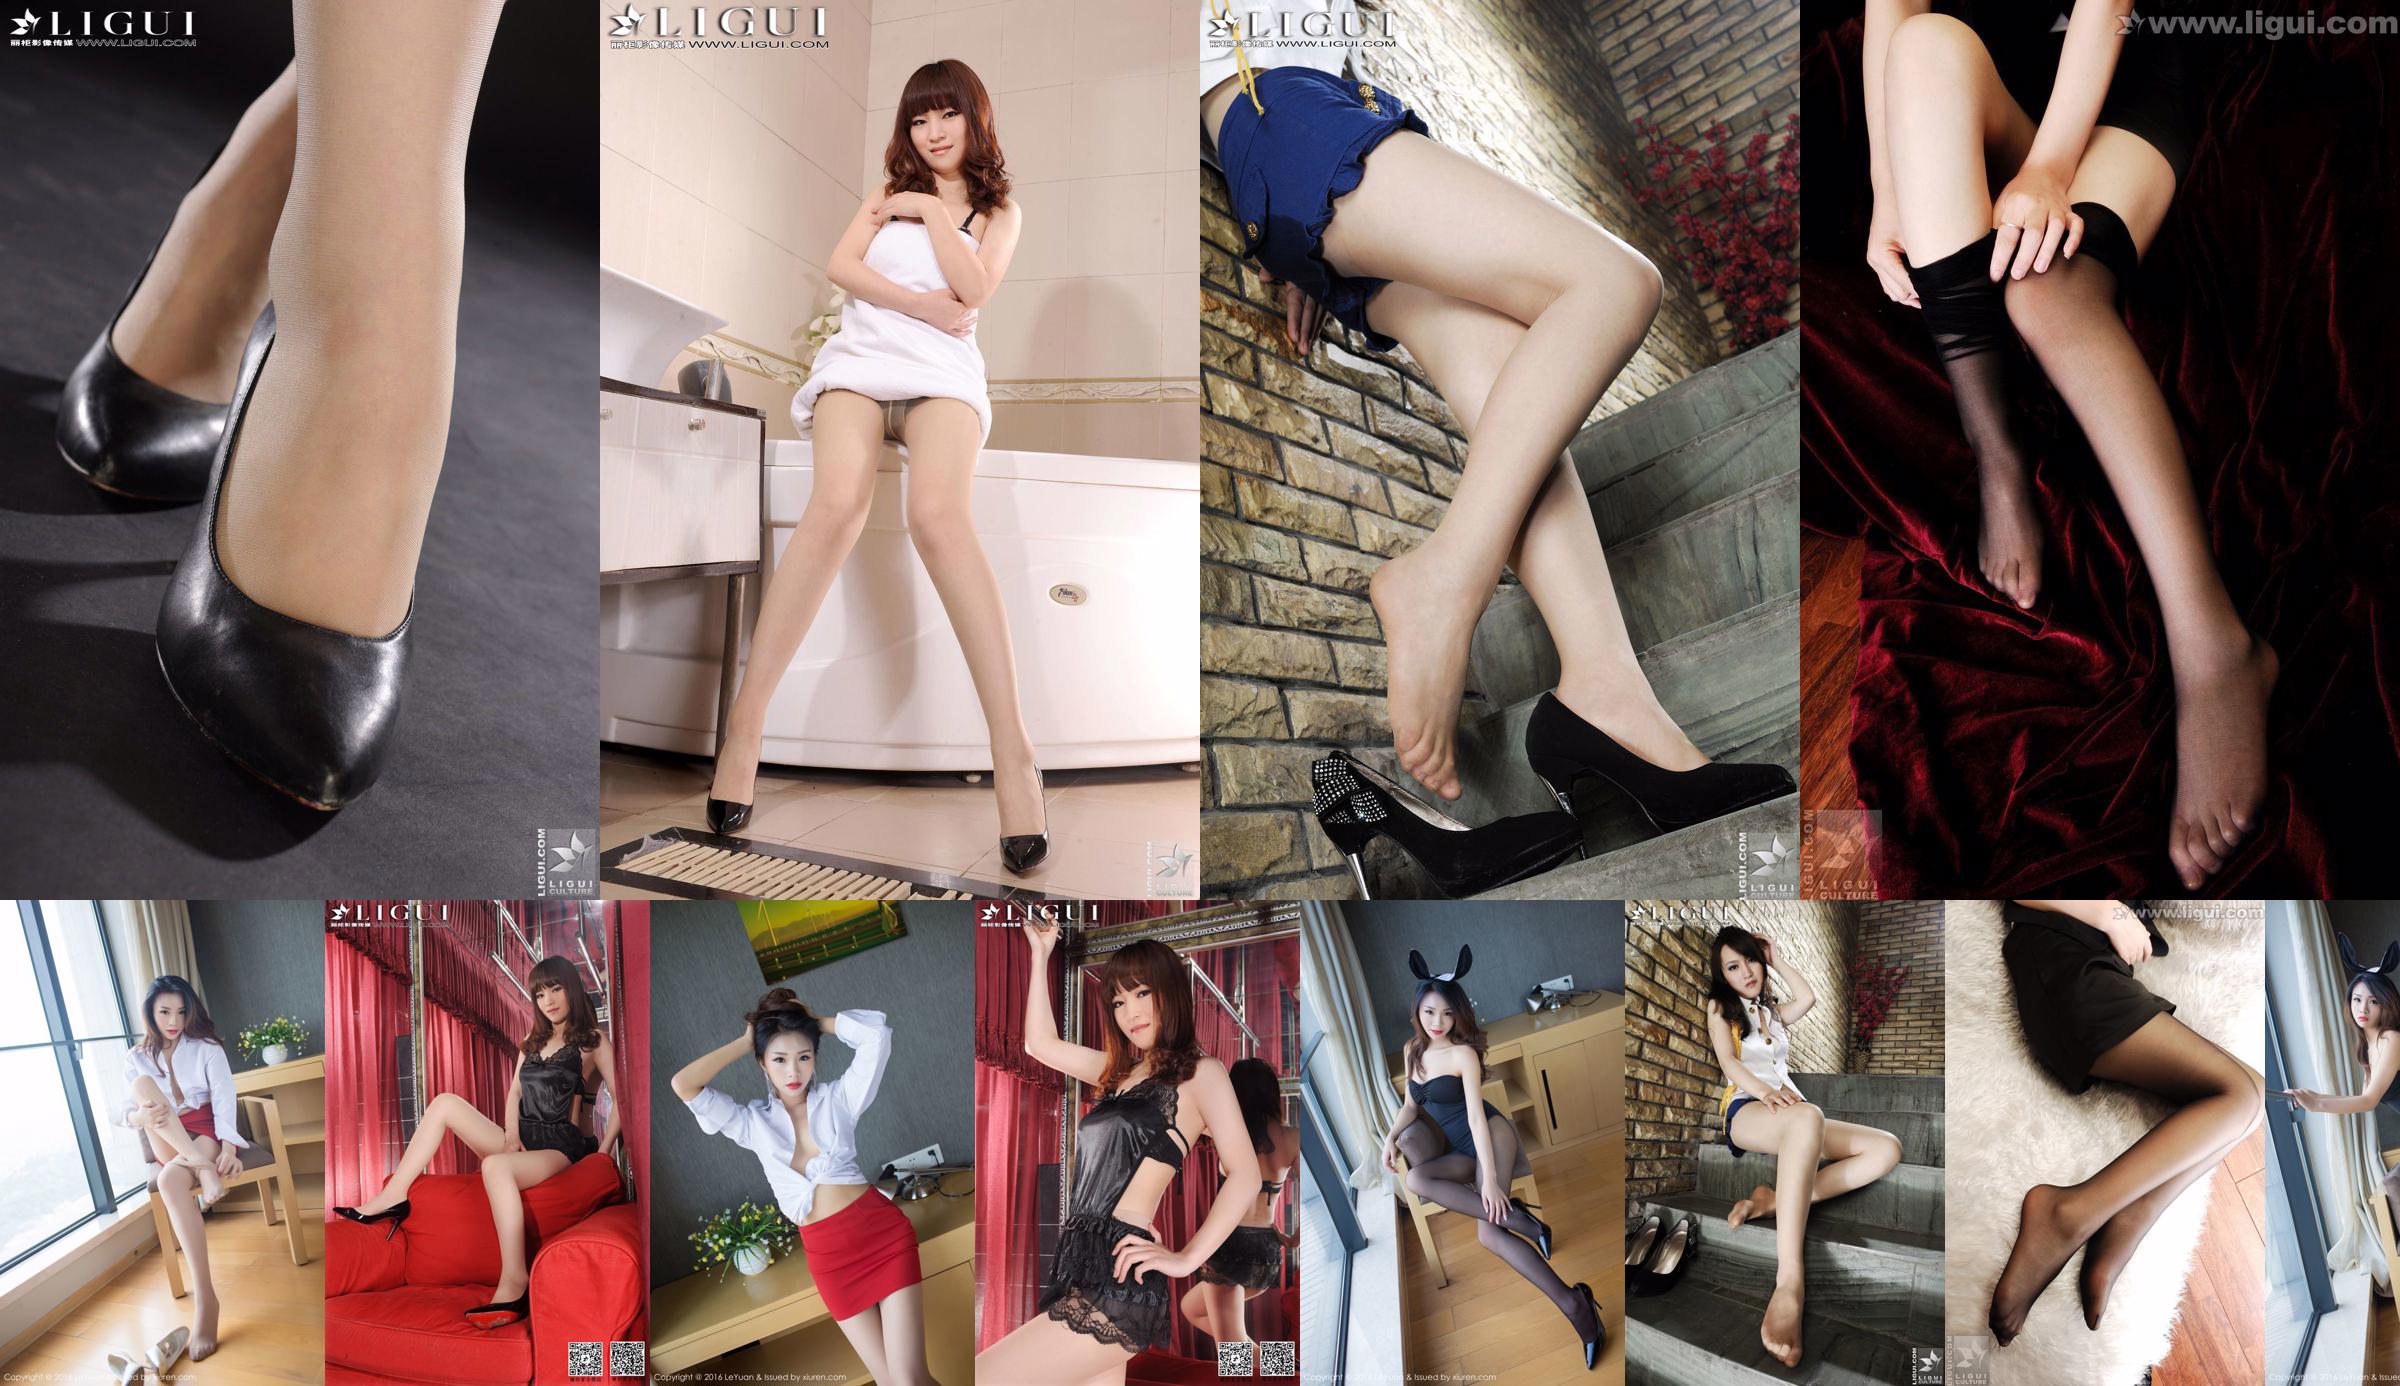 Modella Tina "La bellezza seducente di una segretaria femminile" [丽 柜 LiGui] Foto di belle gambe e piedi No.cf6c7f Pagina 1